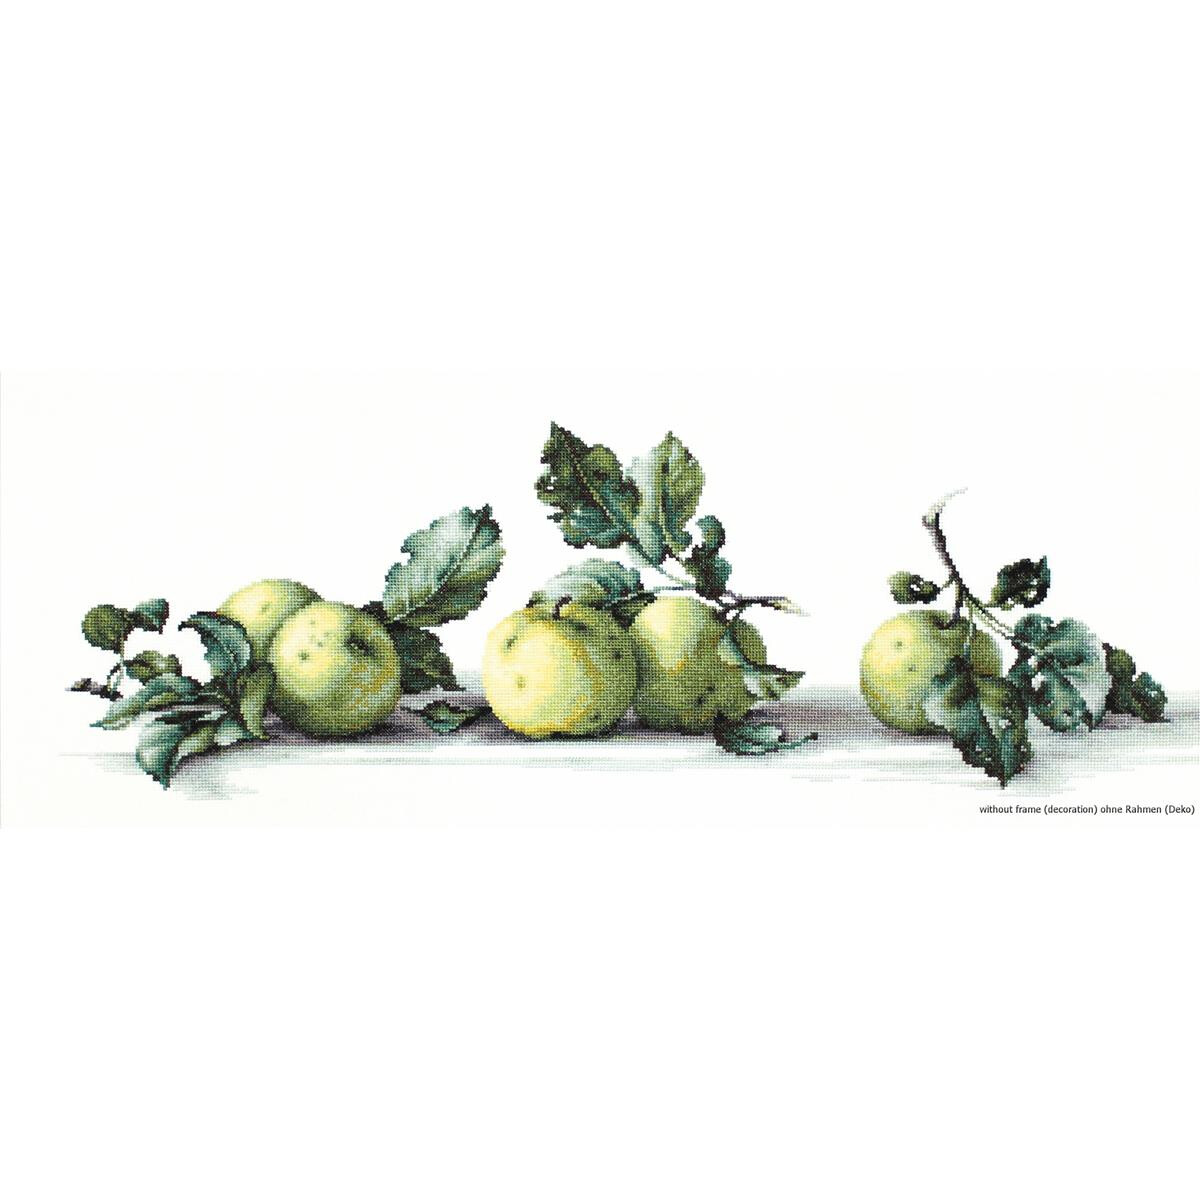 Une représentation artistique de cinq pommes...